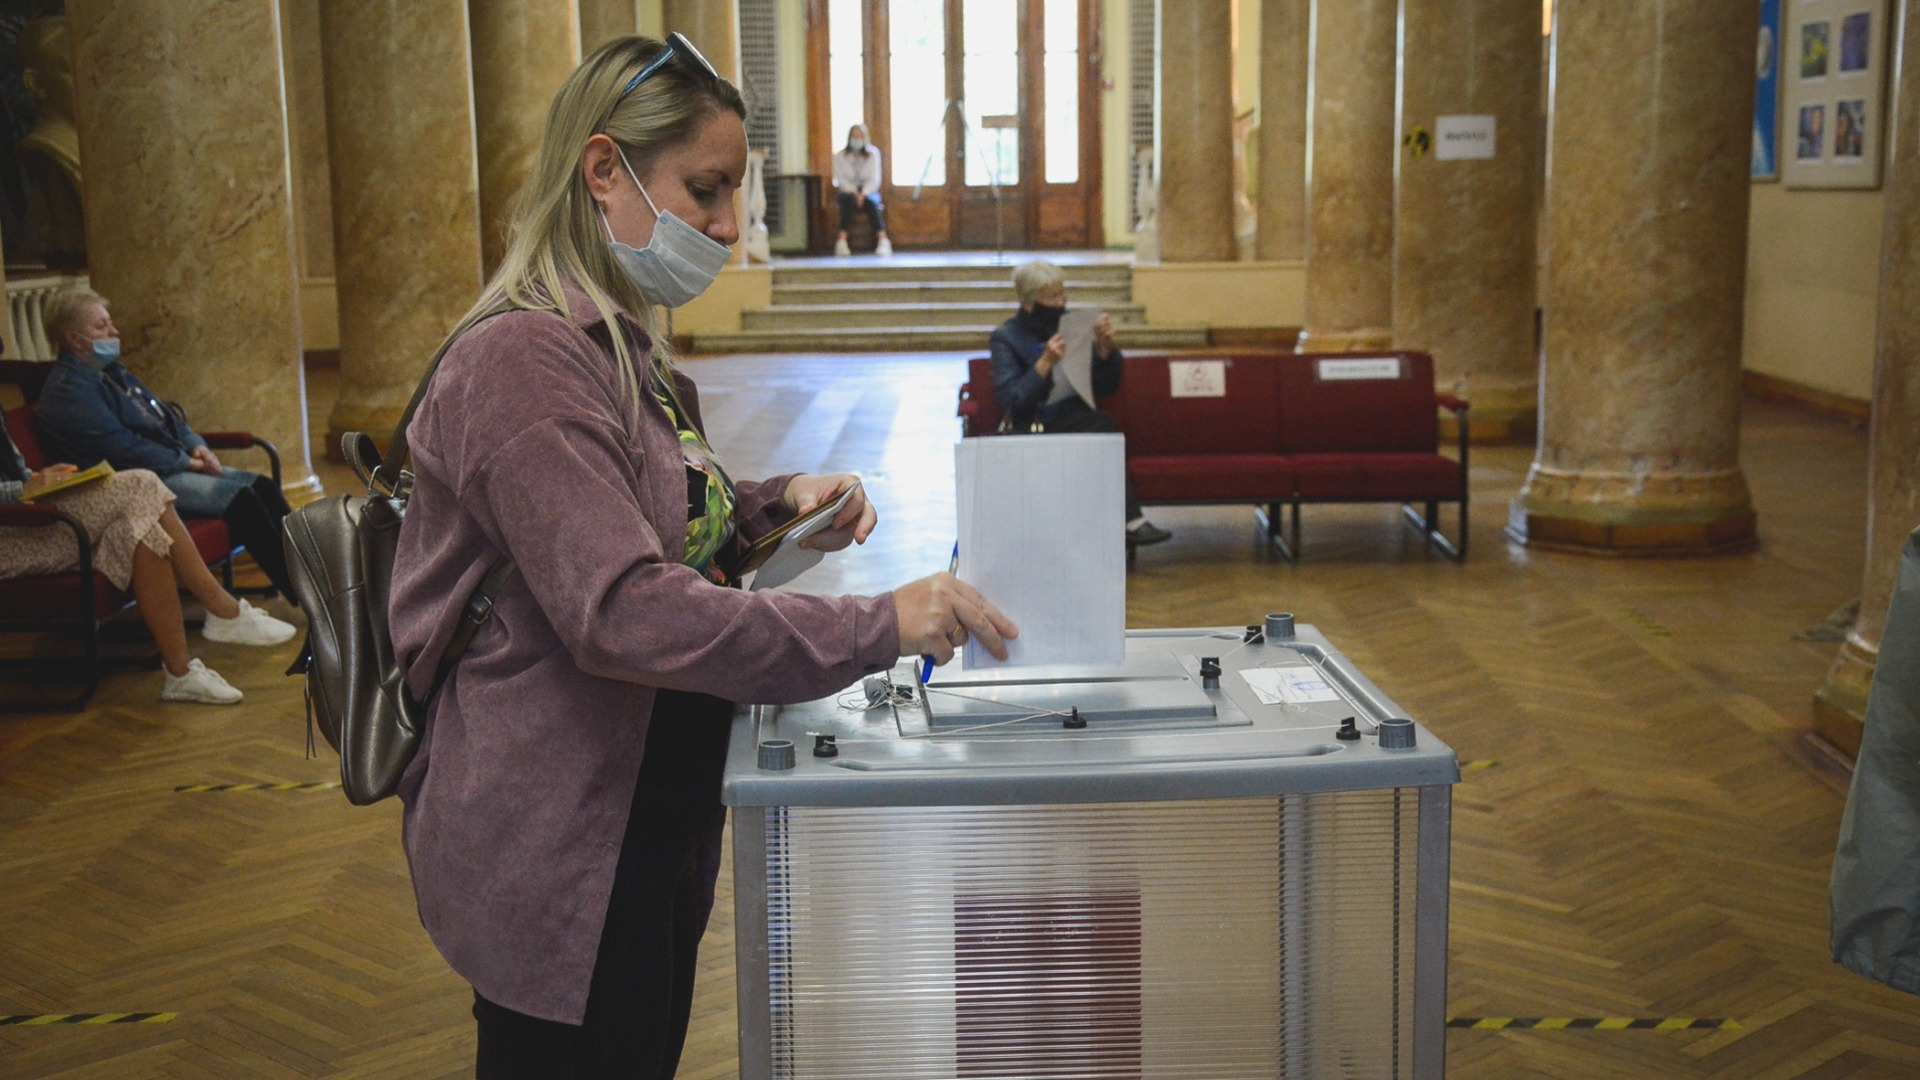 Явка избирателей на выборах губернатора Приморья составила 32,15% — Избирком